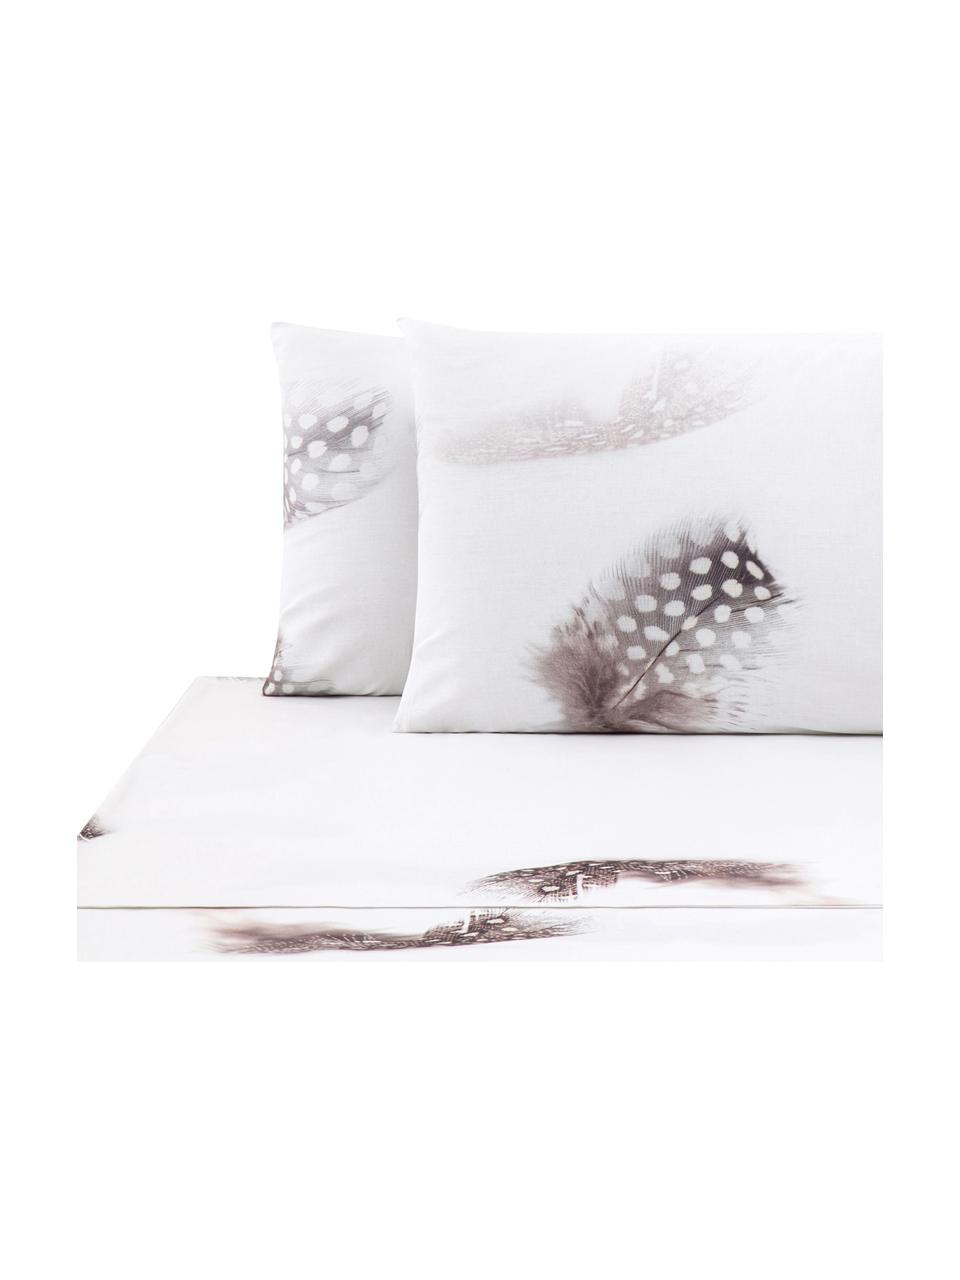 Set lenzuola in cotone Light, Tessuto: Renforcé Numero di fili 1, Bianco, marrone, grigio, 240 x 270 cm + 2 federe 50 x 75 cm